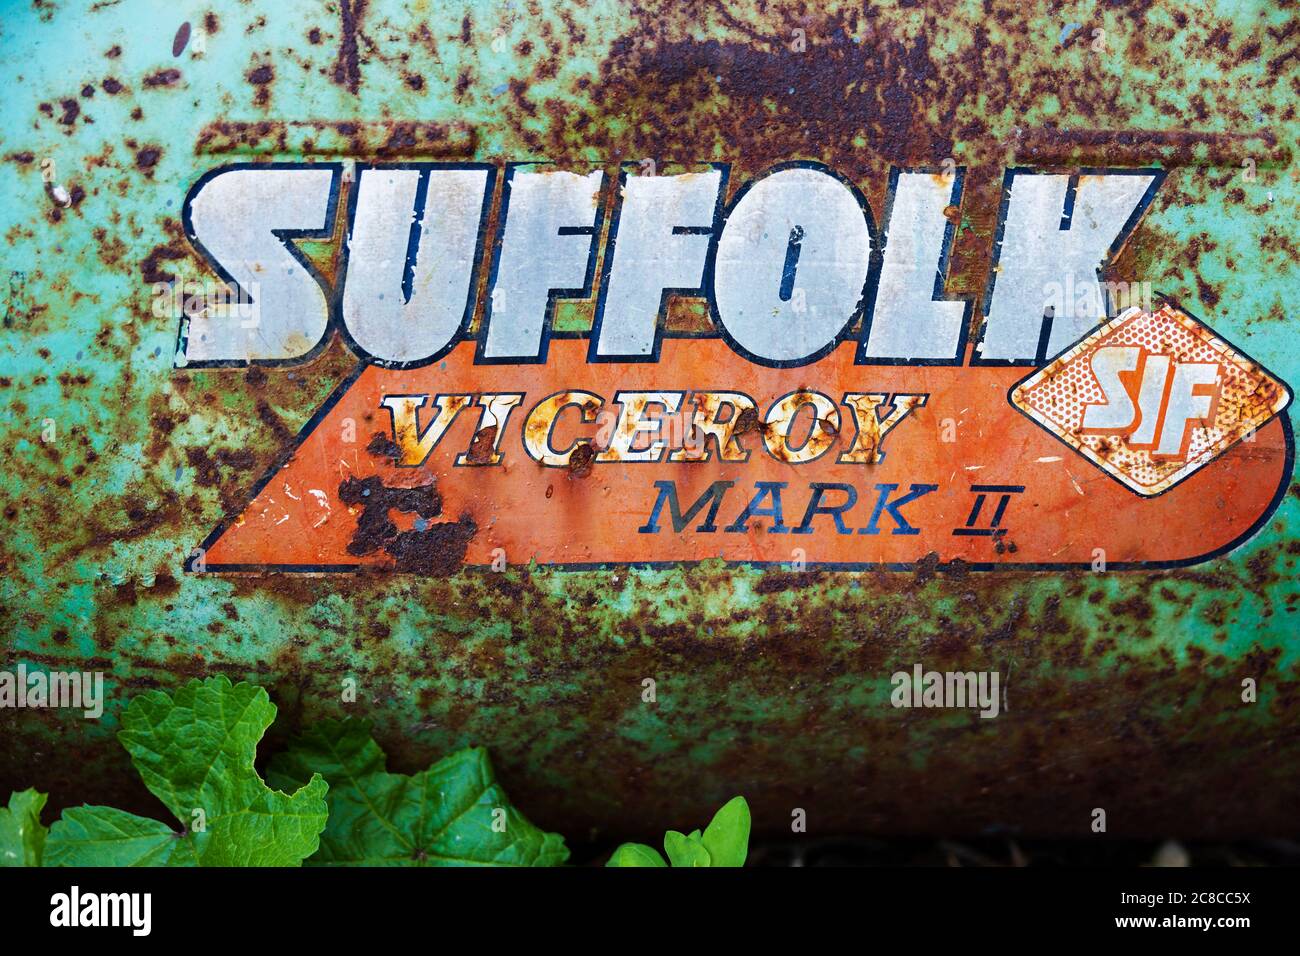 Altes, rostiger Grasauffanggerät für einen Suffolk Viceroy Mark 2 Rasenmäher. Stockfoto